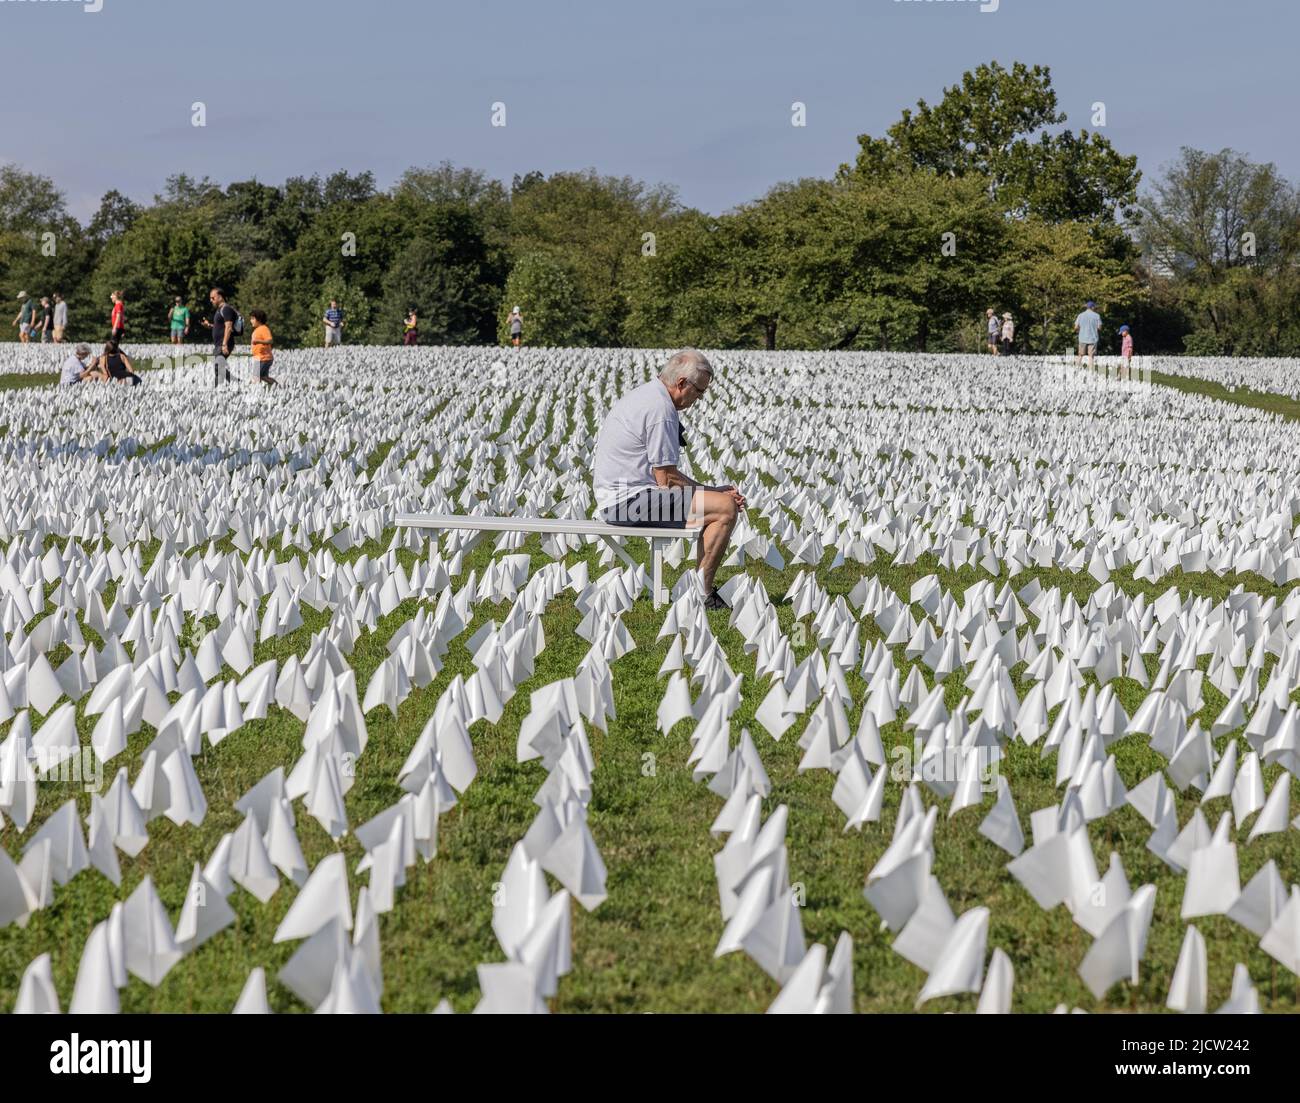 WASHINGTON, D.C., 19. September 2021: Menschen besuchen „in America: Remember“, eine Installation von Suzanne Brennan Firstenberg zu Ehren der Opfer von Covid-19. Stockfoto